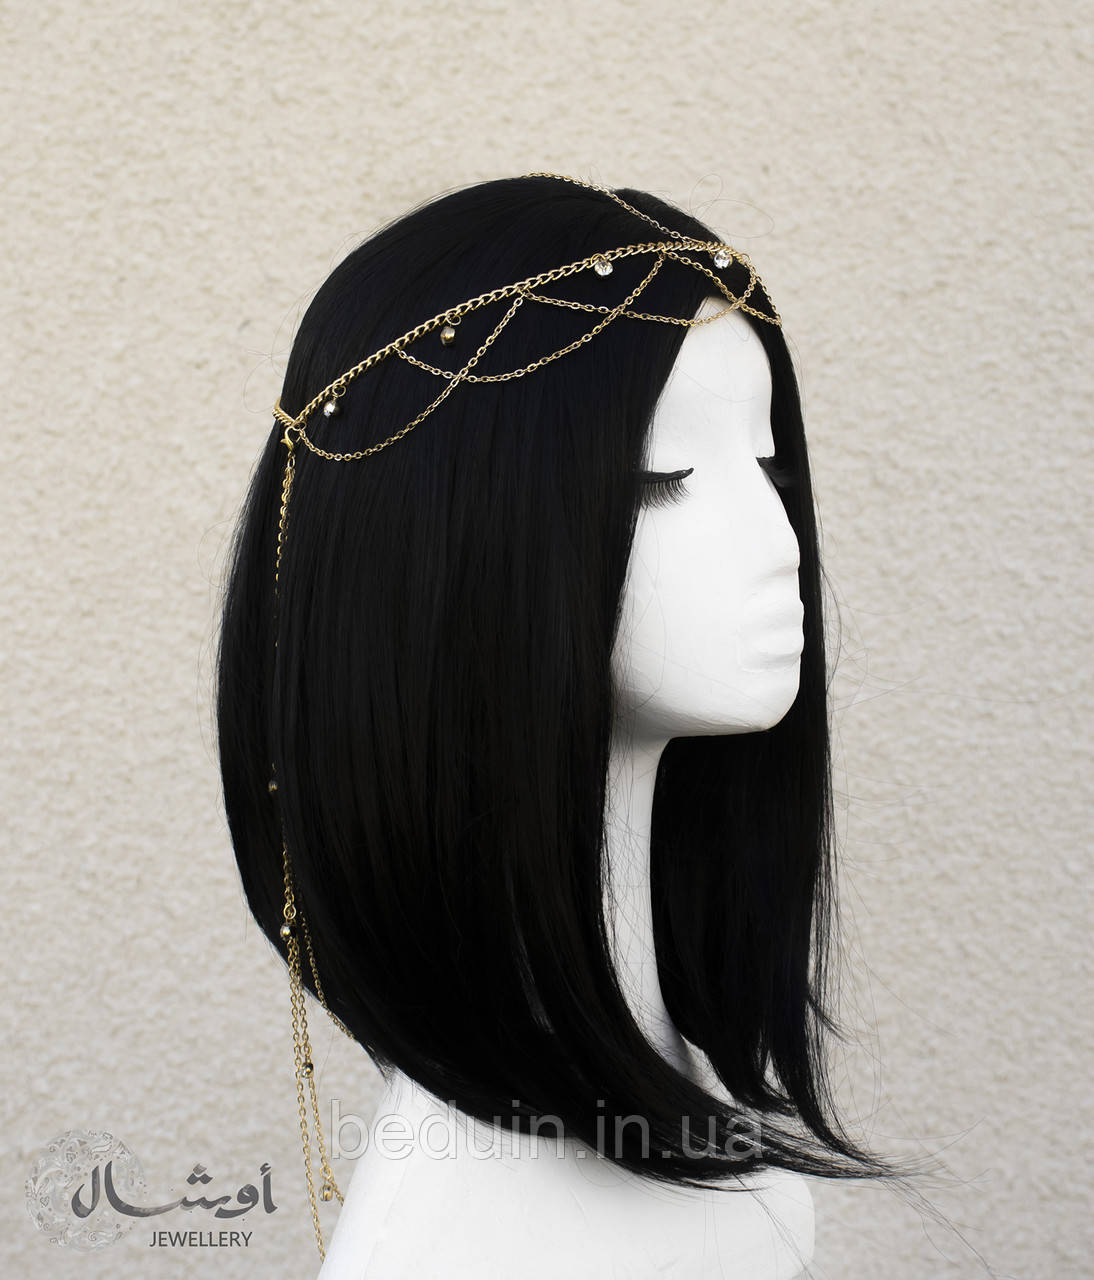 Подовжений ланцюжок Тіара на голову "Жасмин" — прикраса для фотосесії, на захід Aushal Jewellery